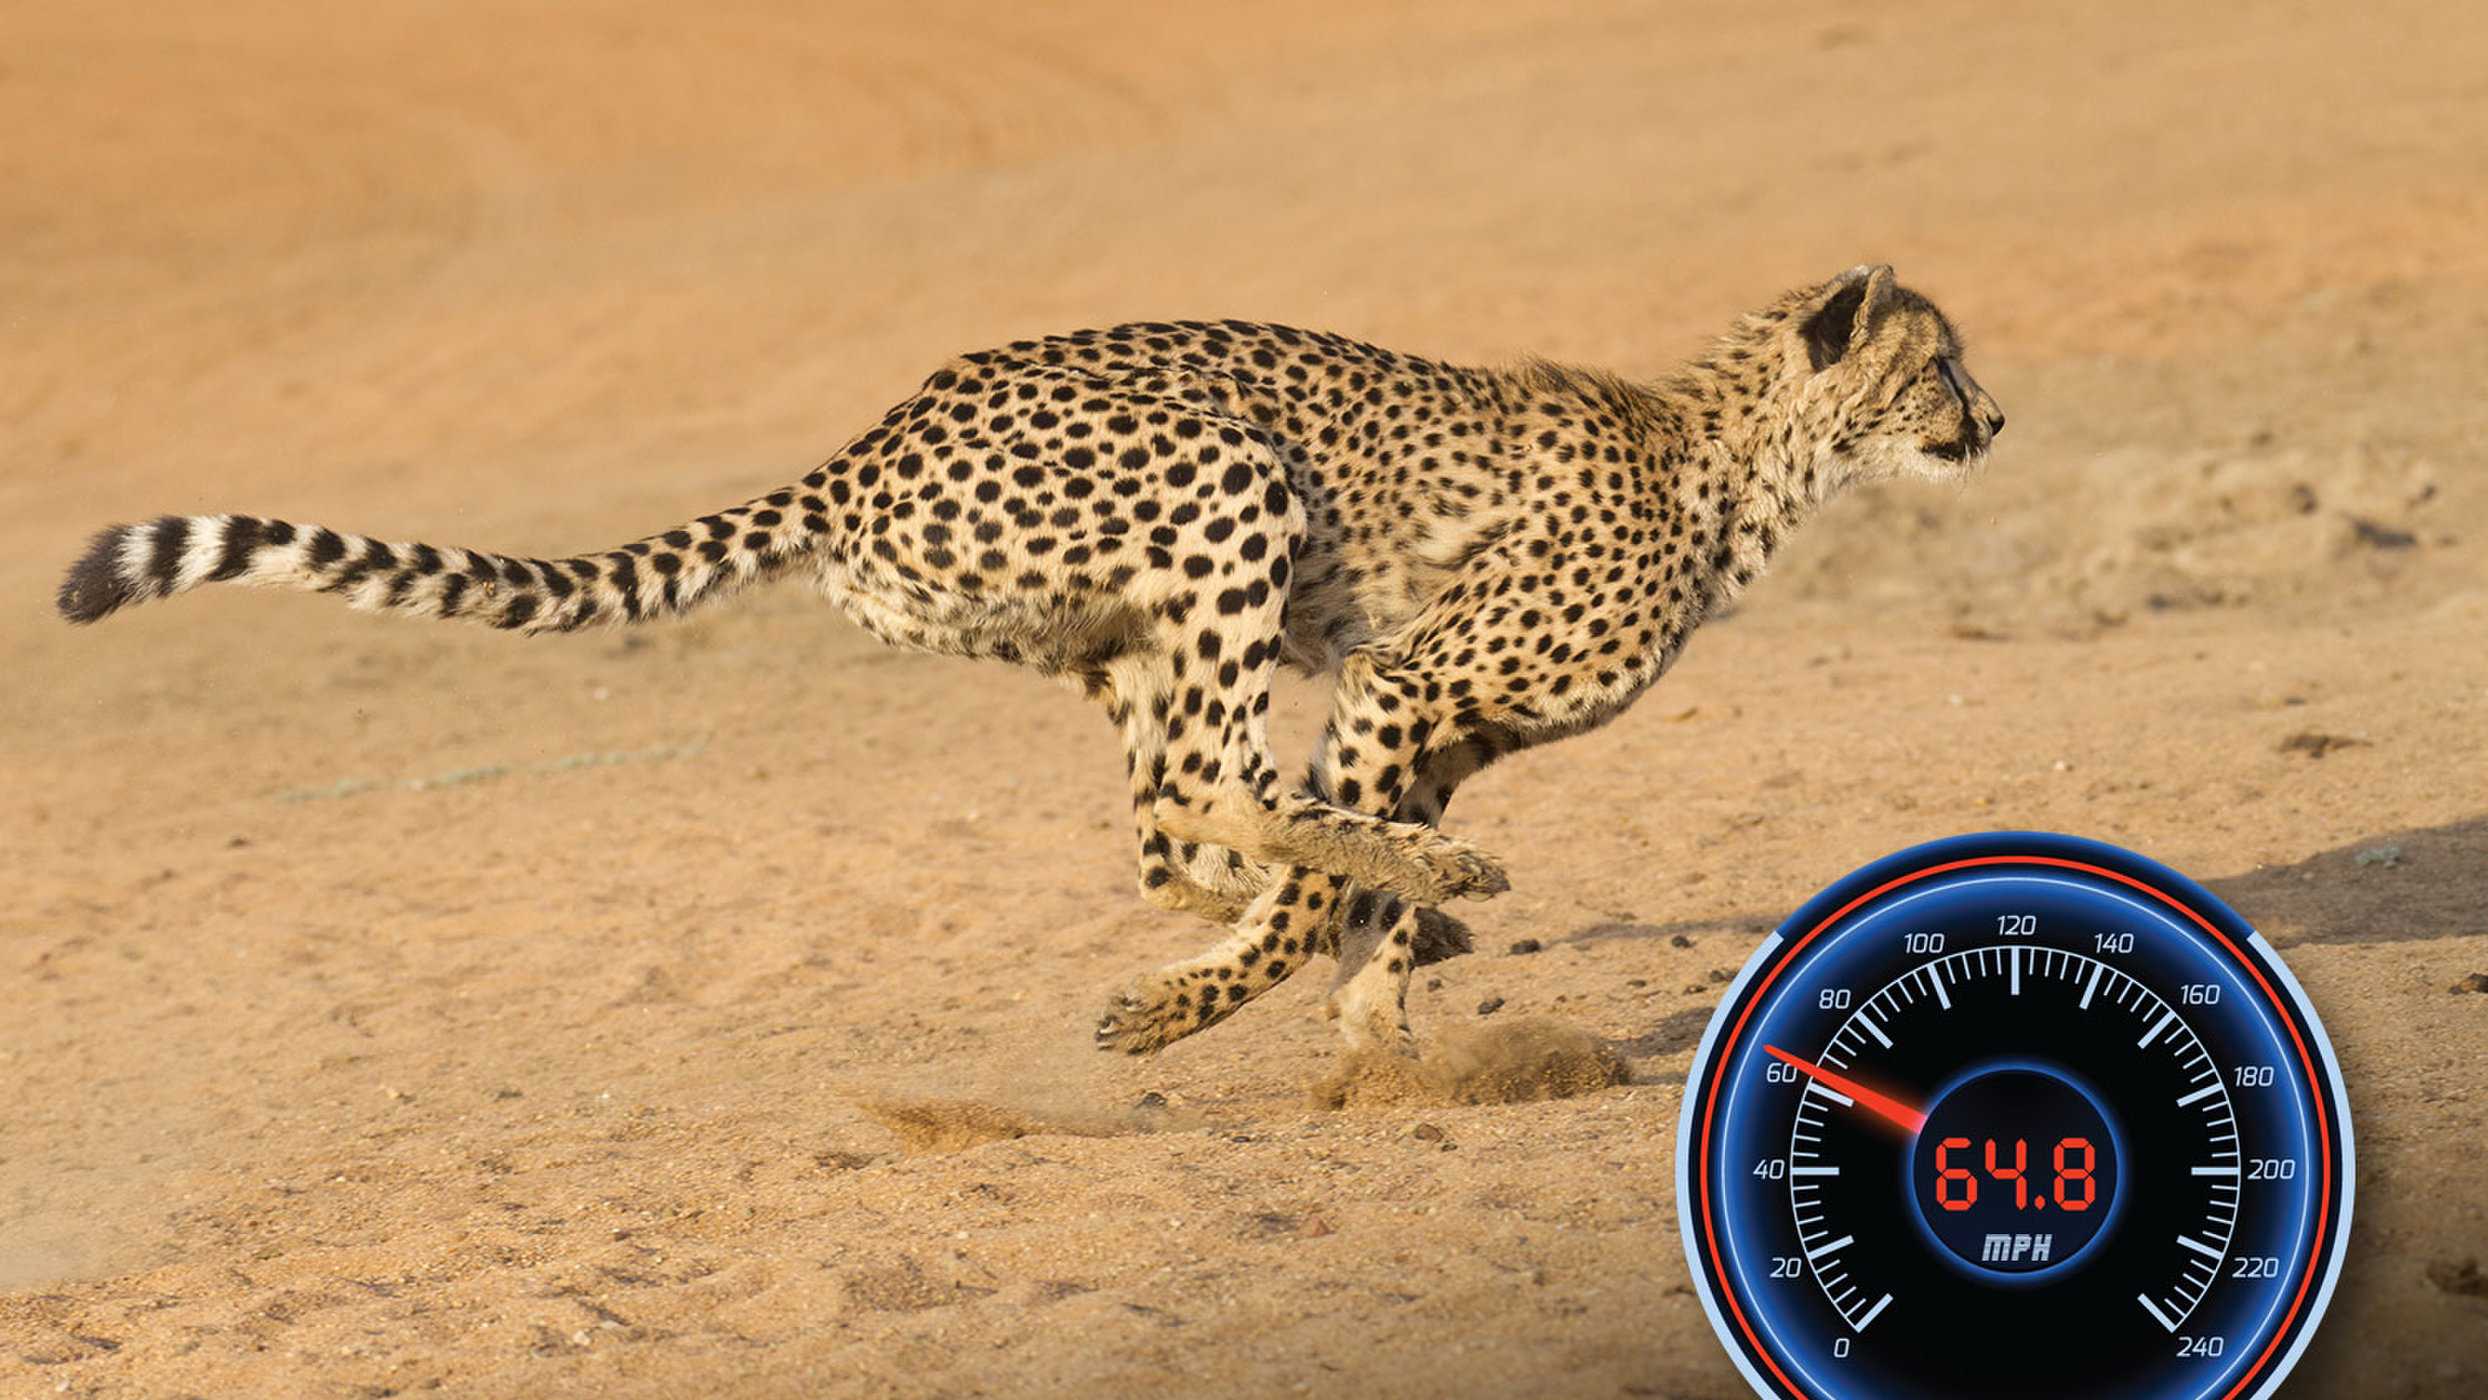 ОТВЕТ: Жирафы способны развивать скорость бега до